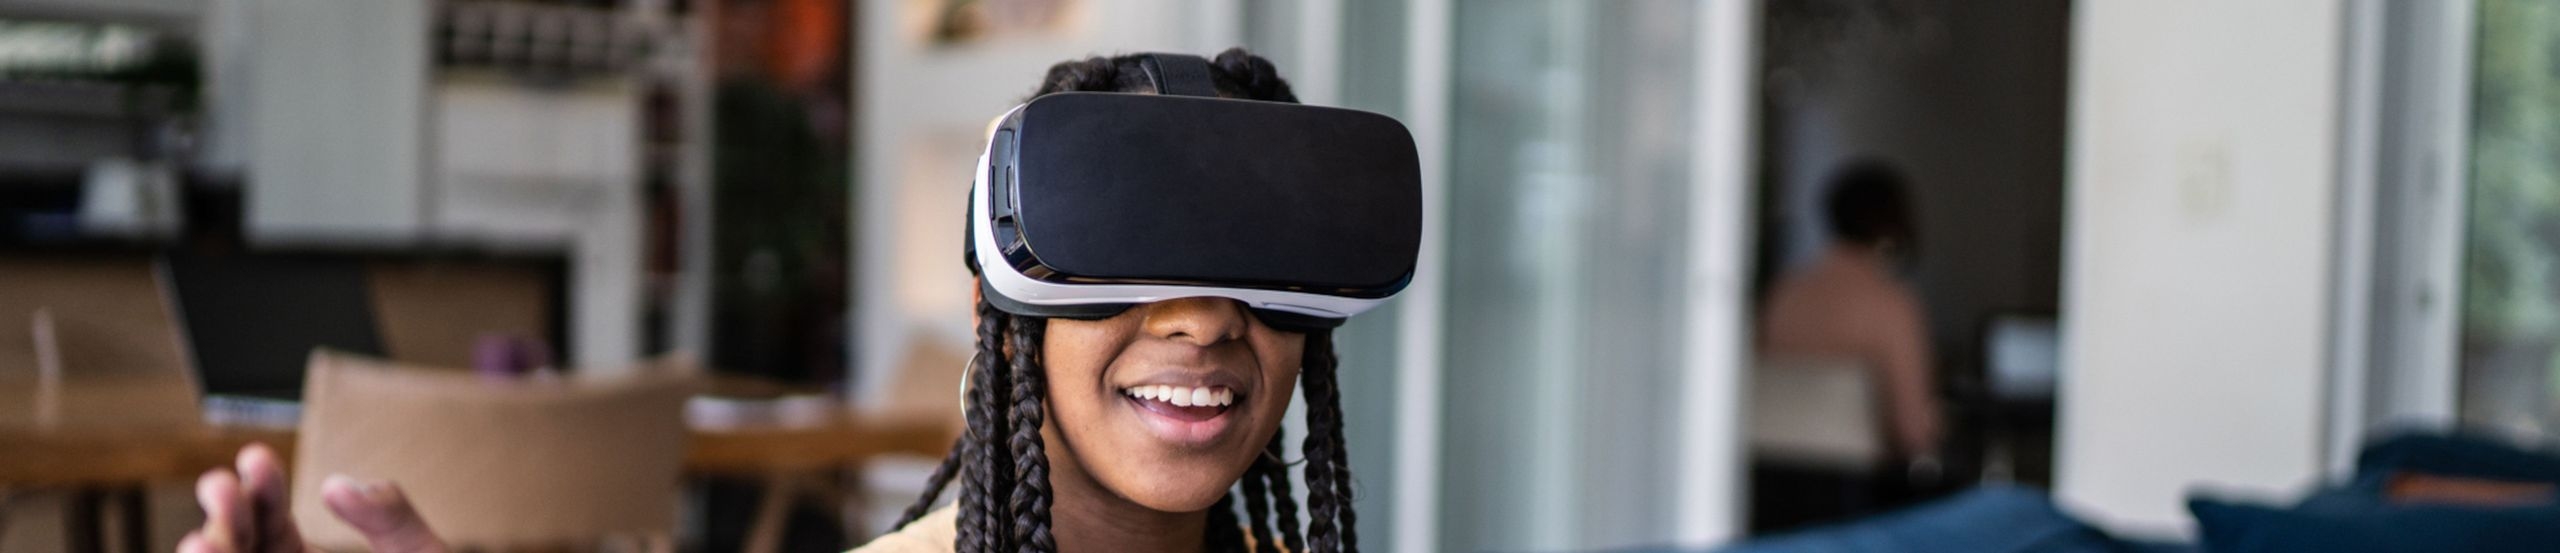 Eine junge Frau sitzt mit einem aufgesetzten VR-Headset in einem Zimmer und lächelt. 